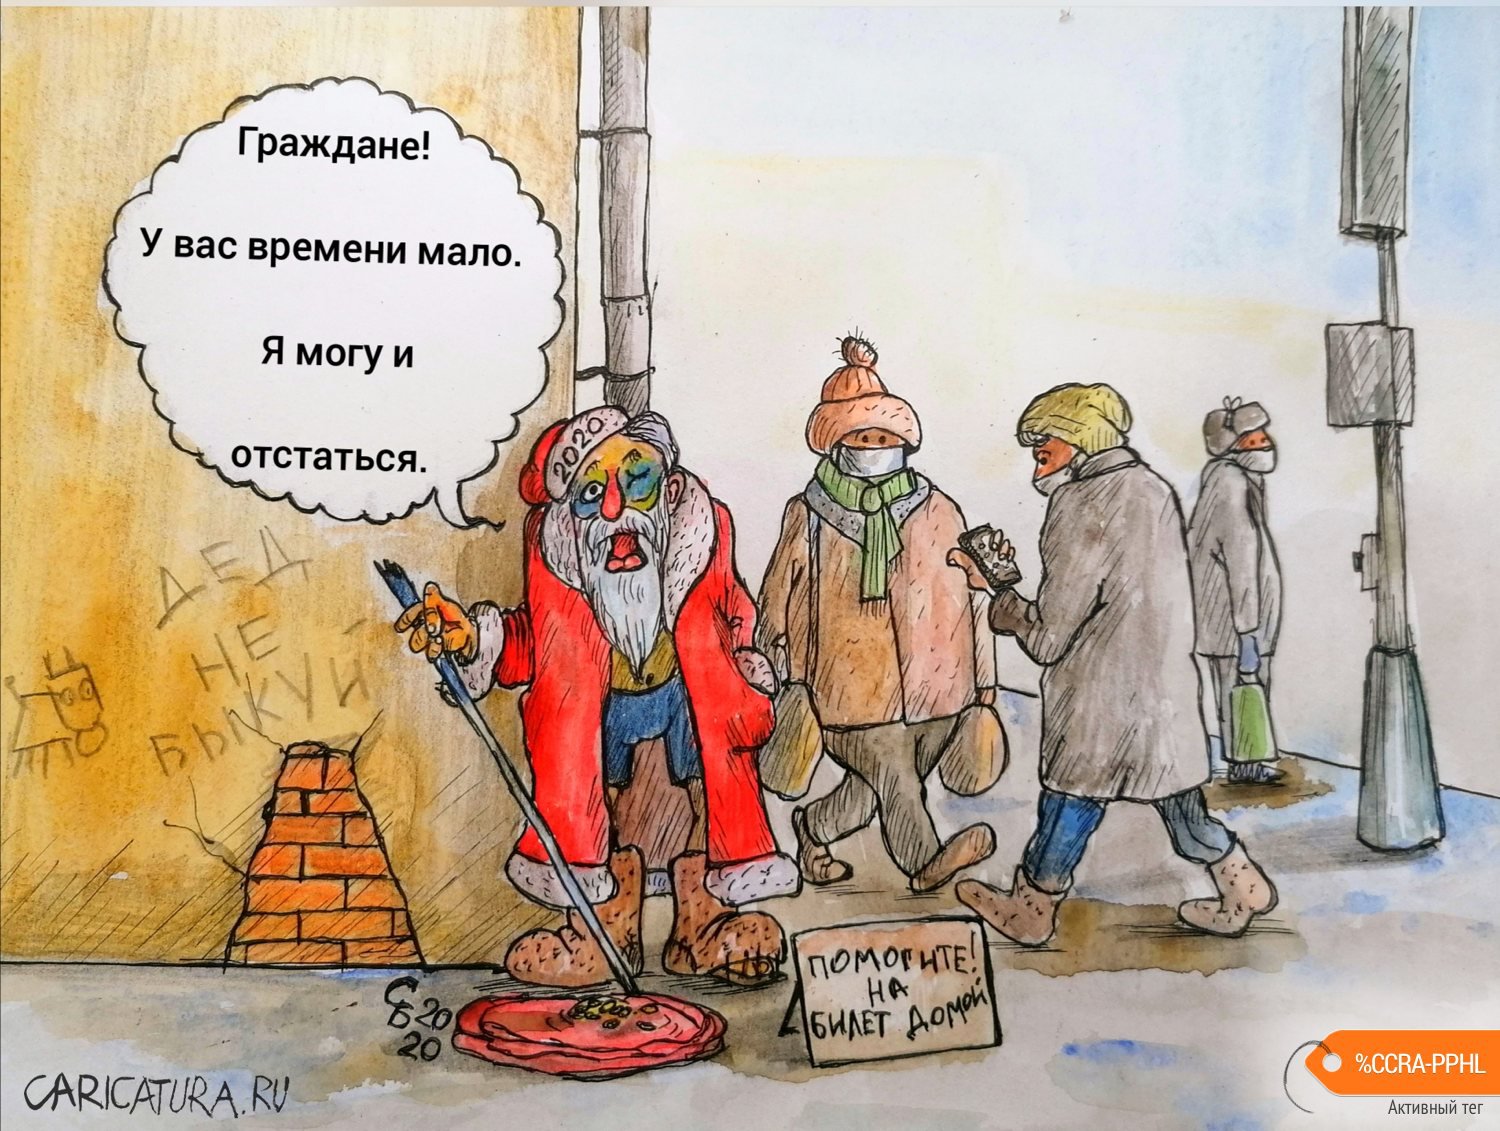 Карикатура "Проводы старого года", Сергей Боровиков